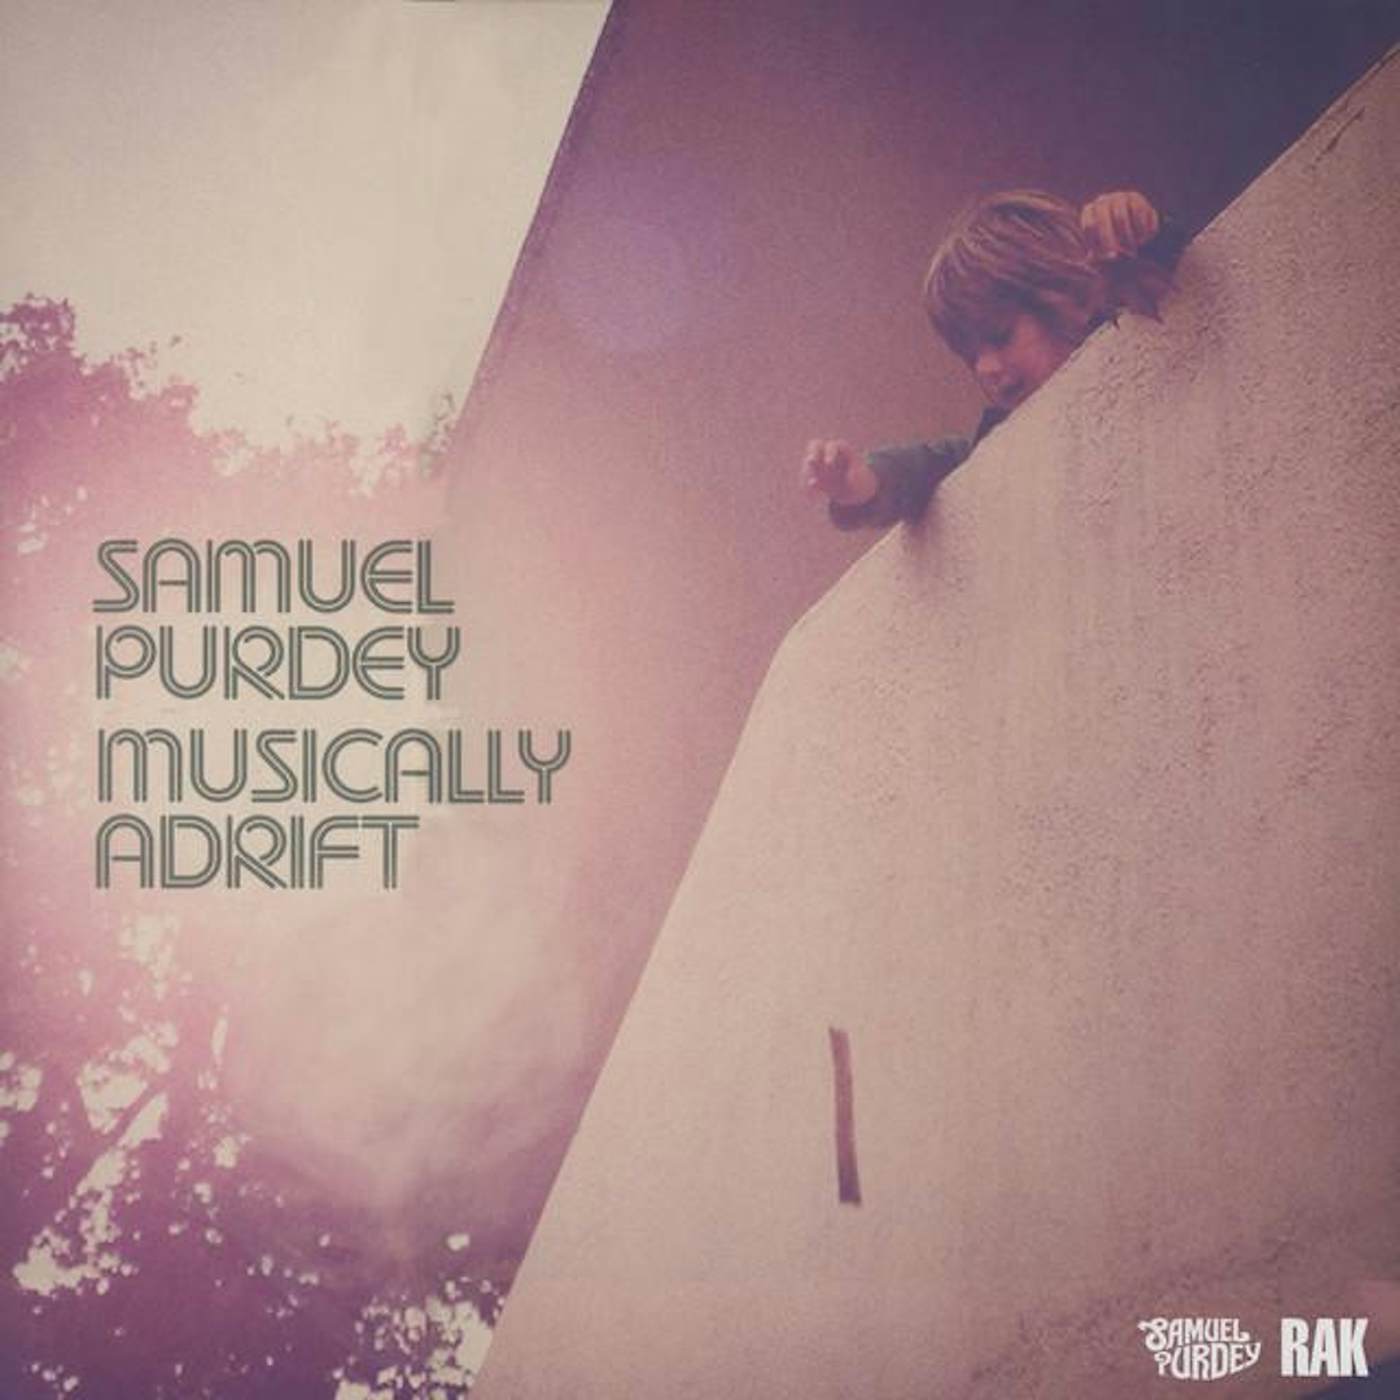 Samuel Purdey